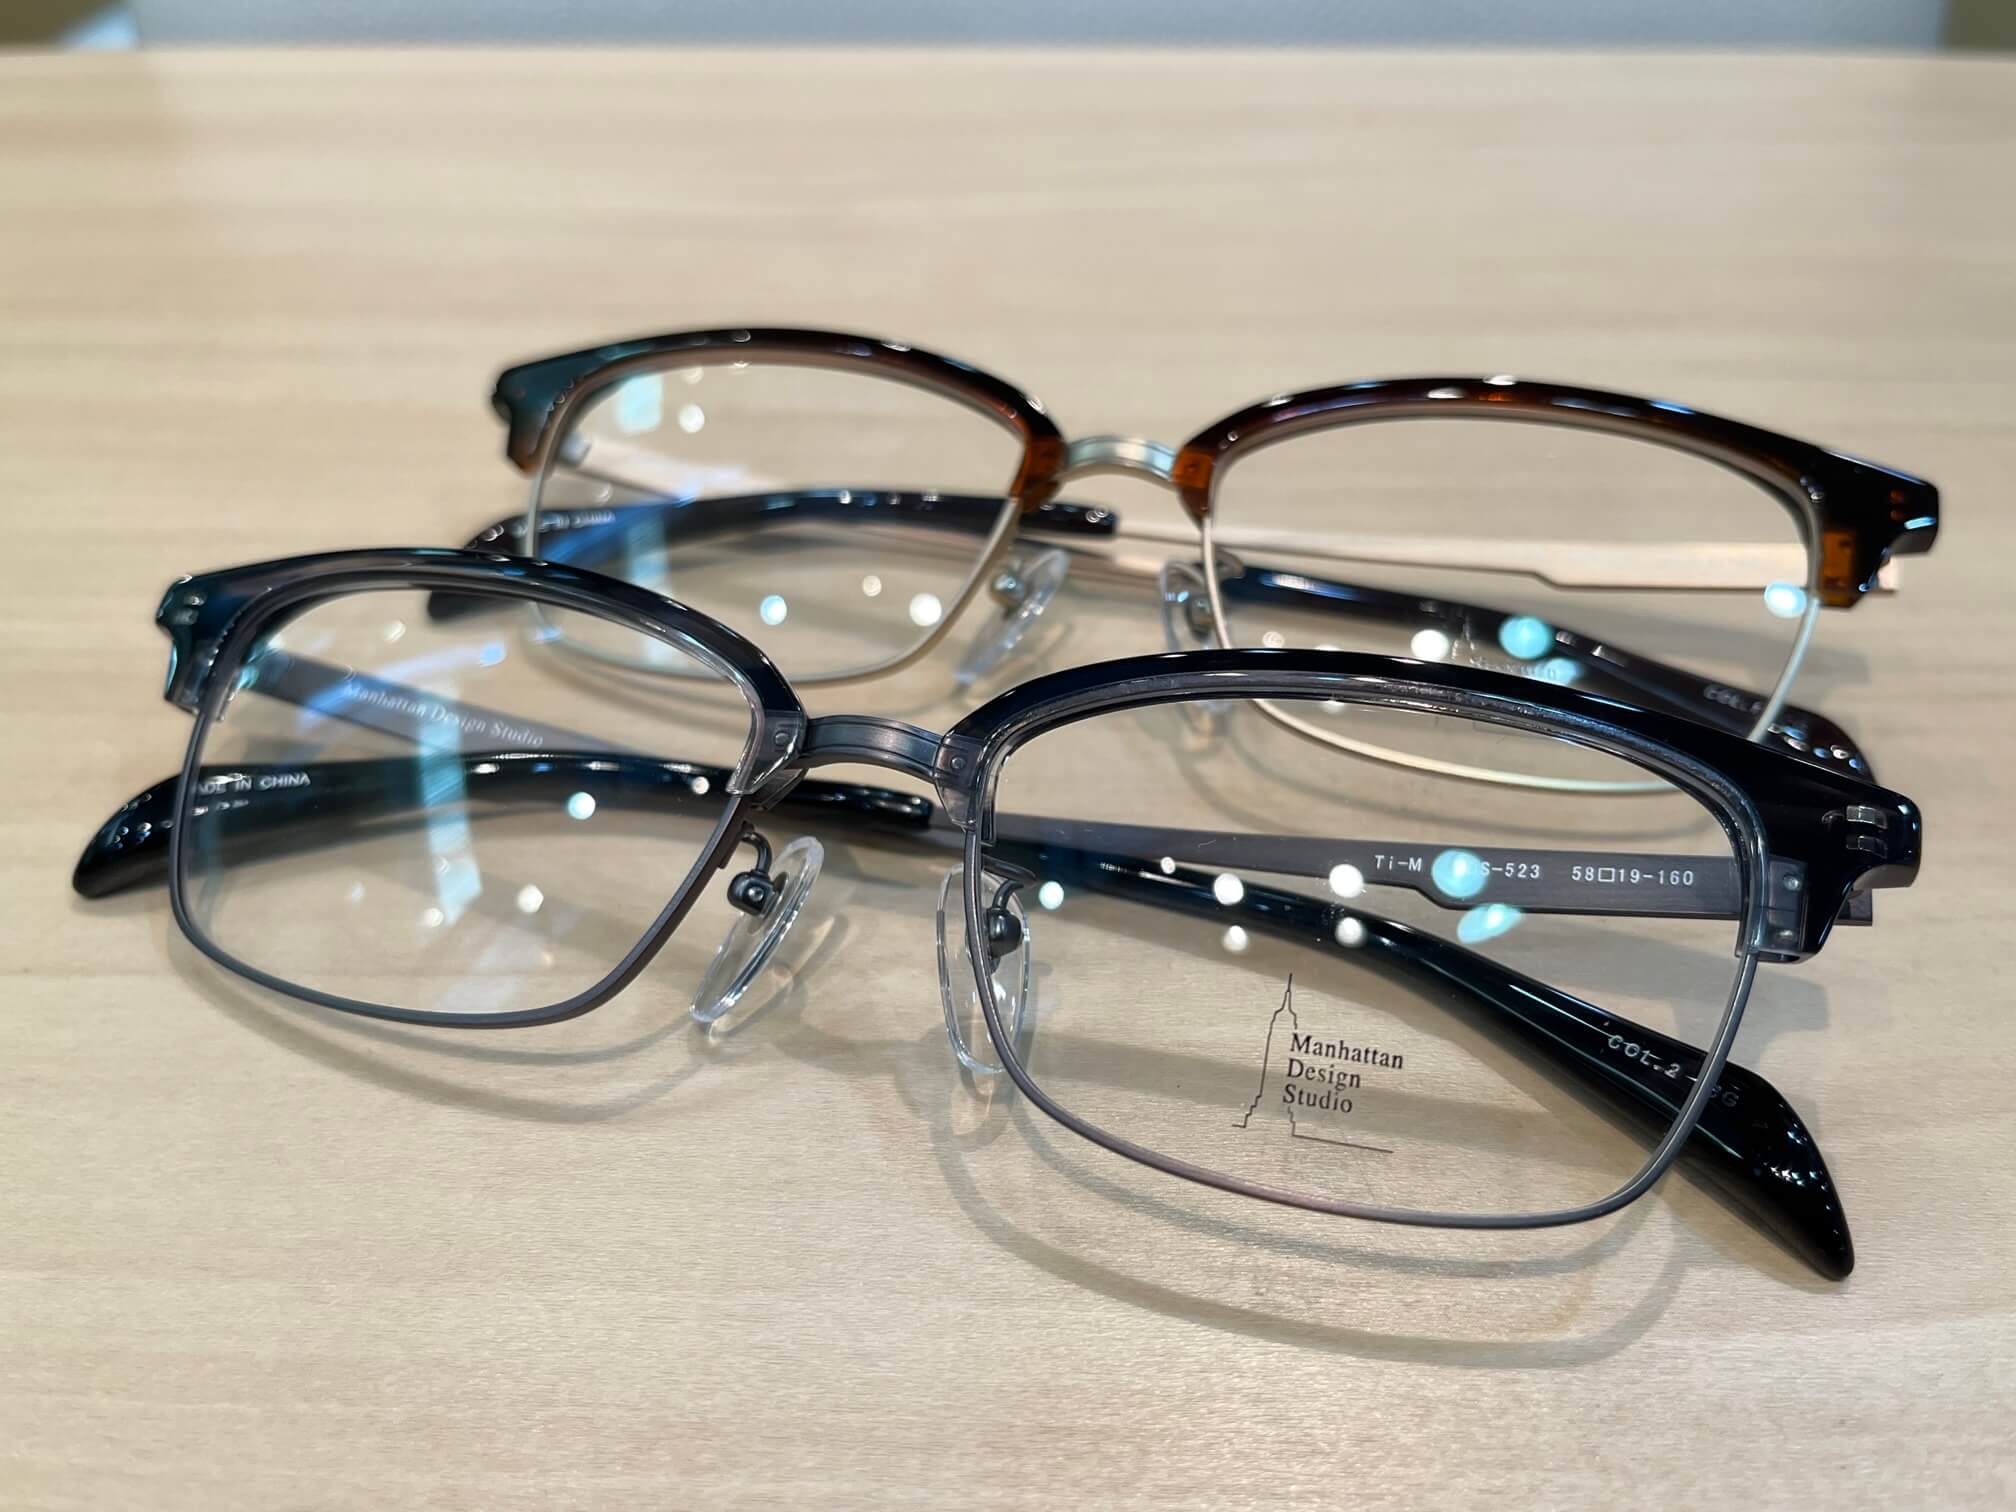 マンハッタンデザインスタジオ大きいサイズメガネのサトー佐藤眼鏡店福岡県飯塚市